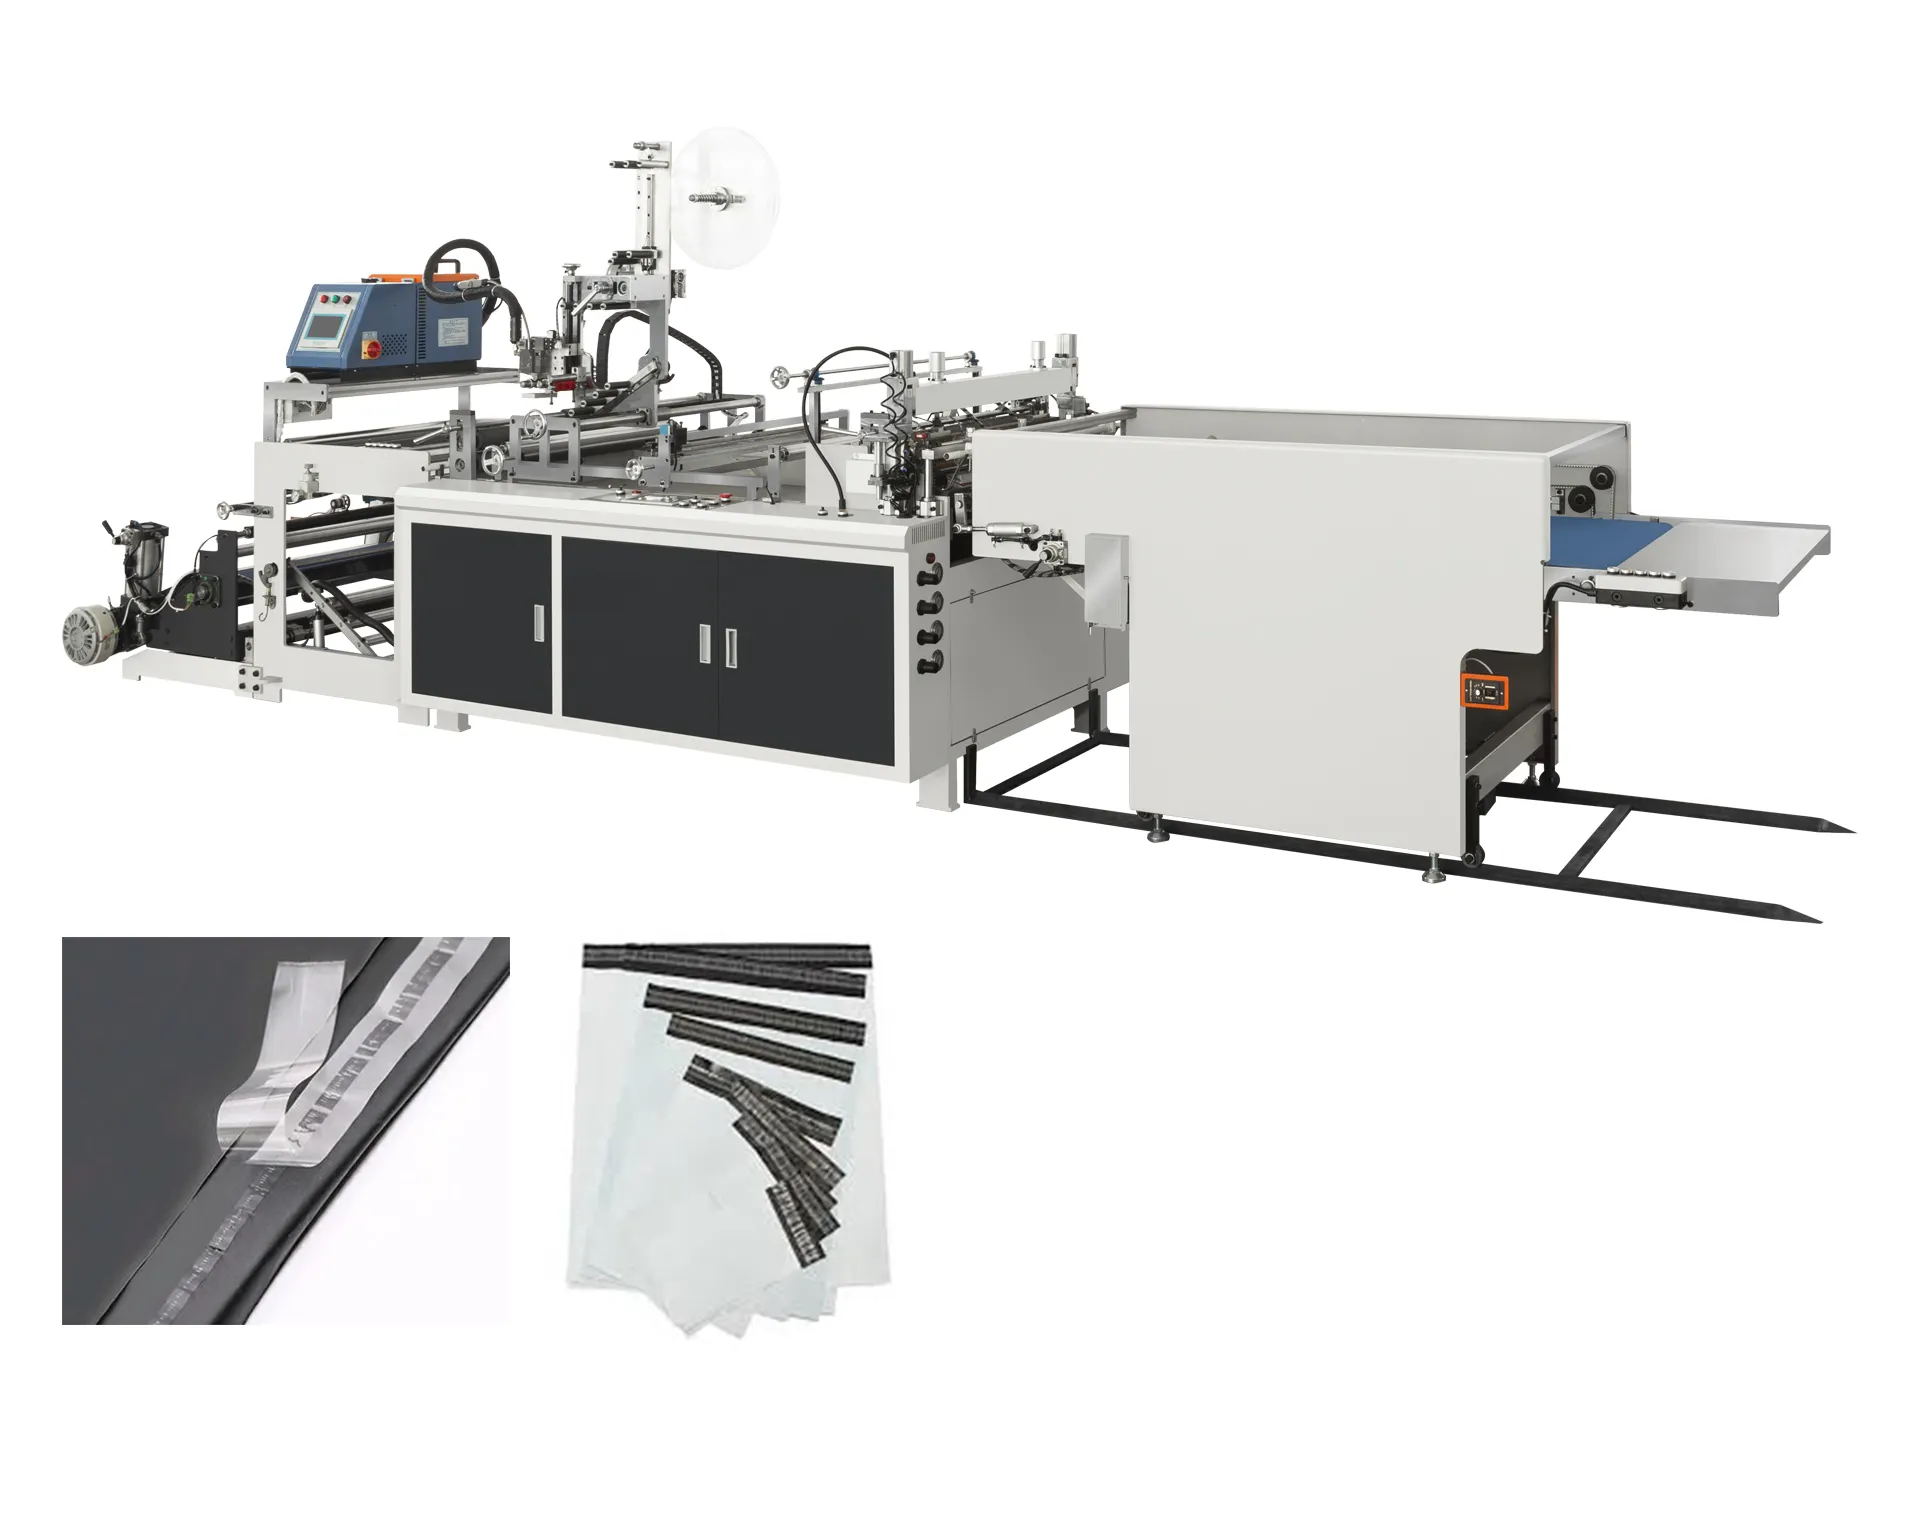 ماكينة تصنيع حقائب البريد والسريع والبريد المصنوعة من البولي إيثيلين والبولي إيثيلين BHiE RF820 للتوصيل والشحن